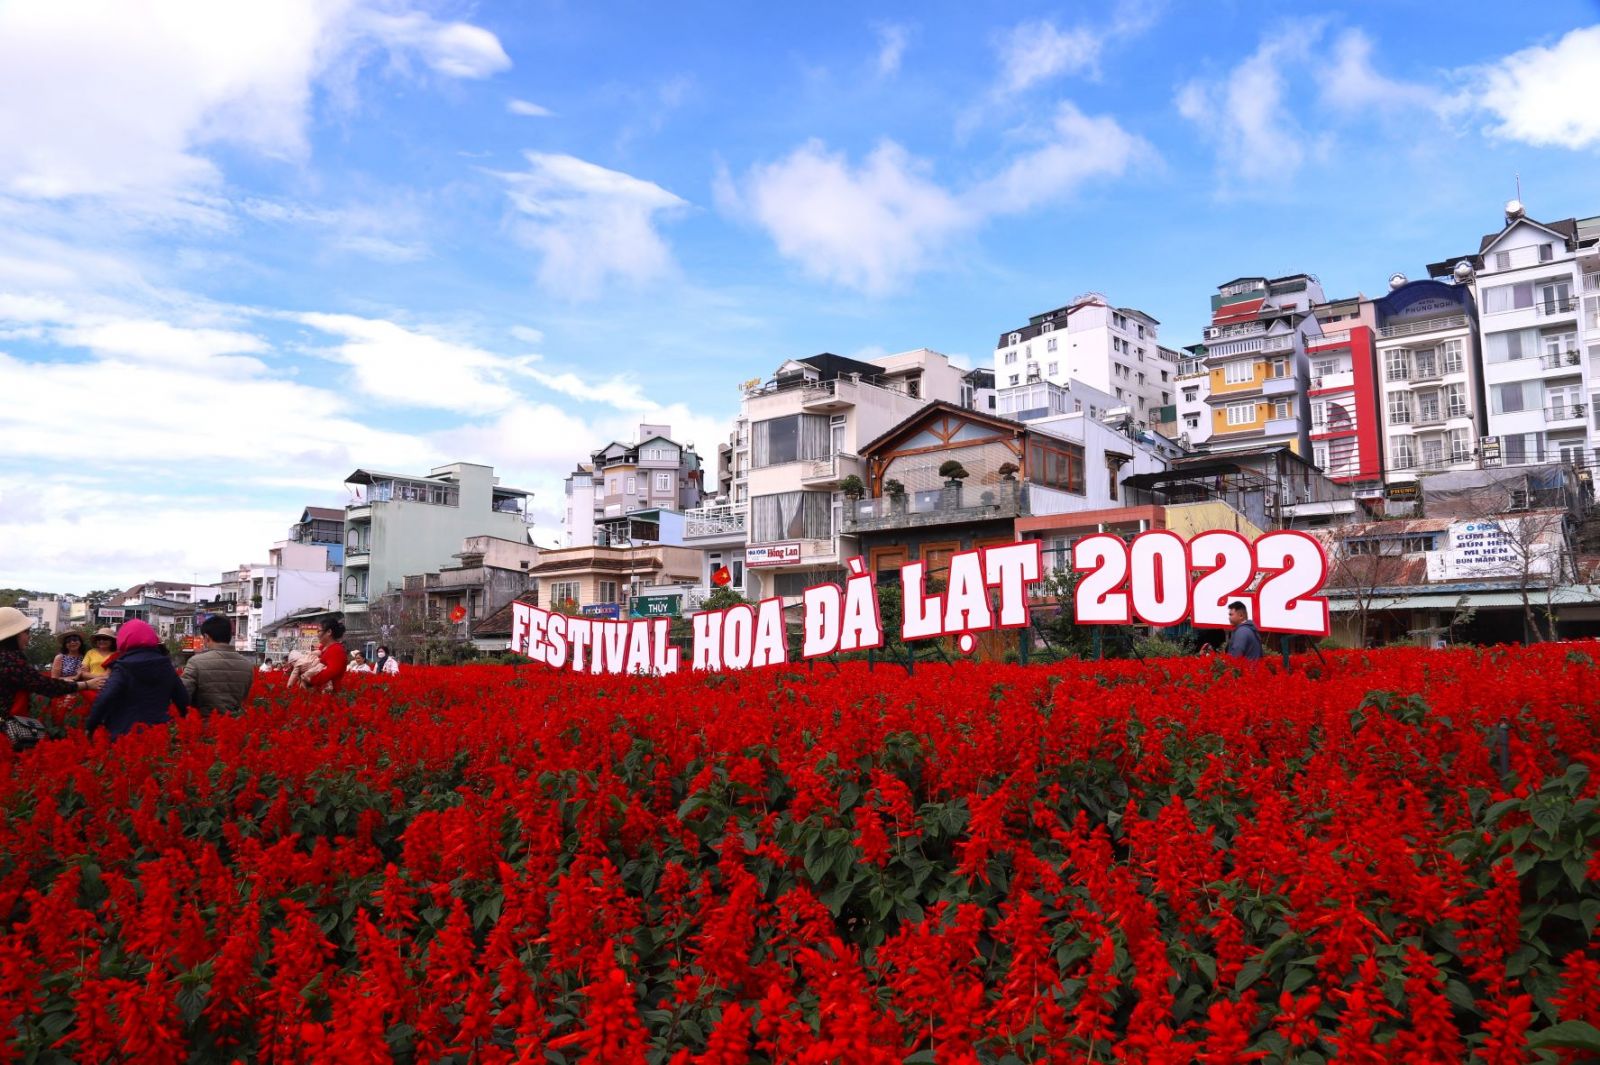 Thời tiết đẹp ủng hộ Đà Lạt dịp Festival năm 2022. Ảnh: Anh Thiệp